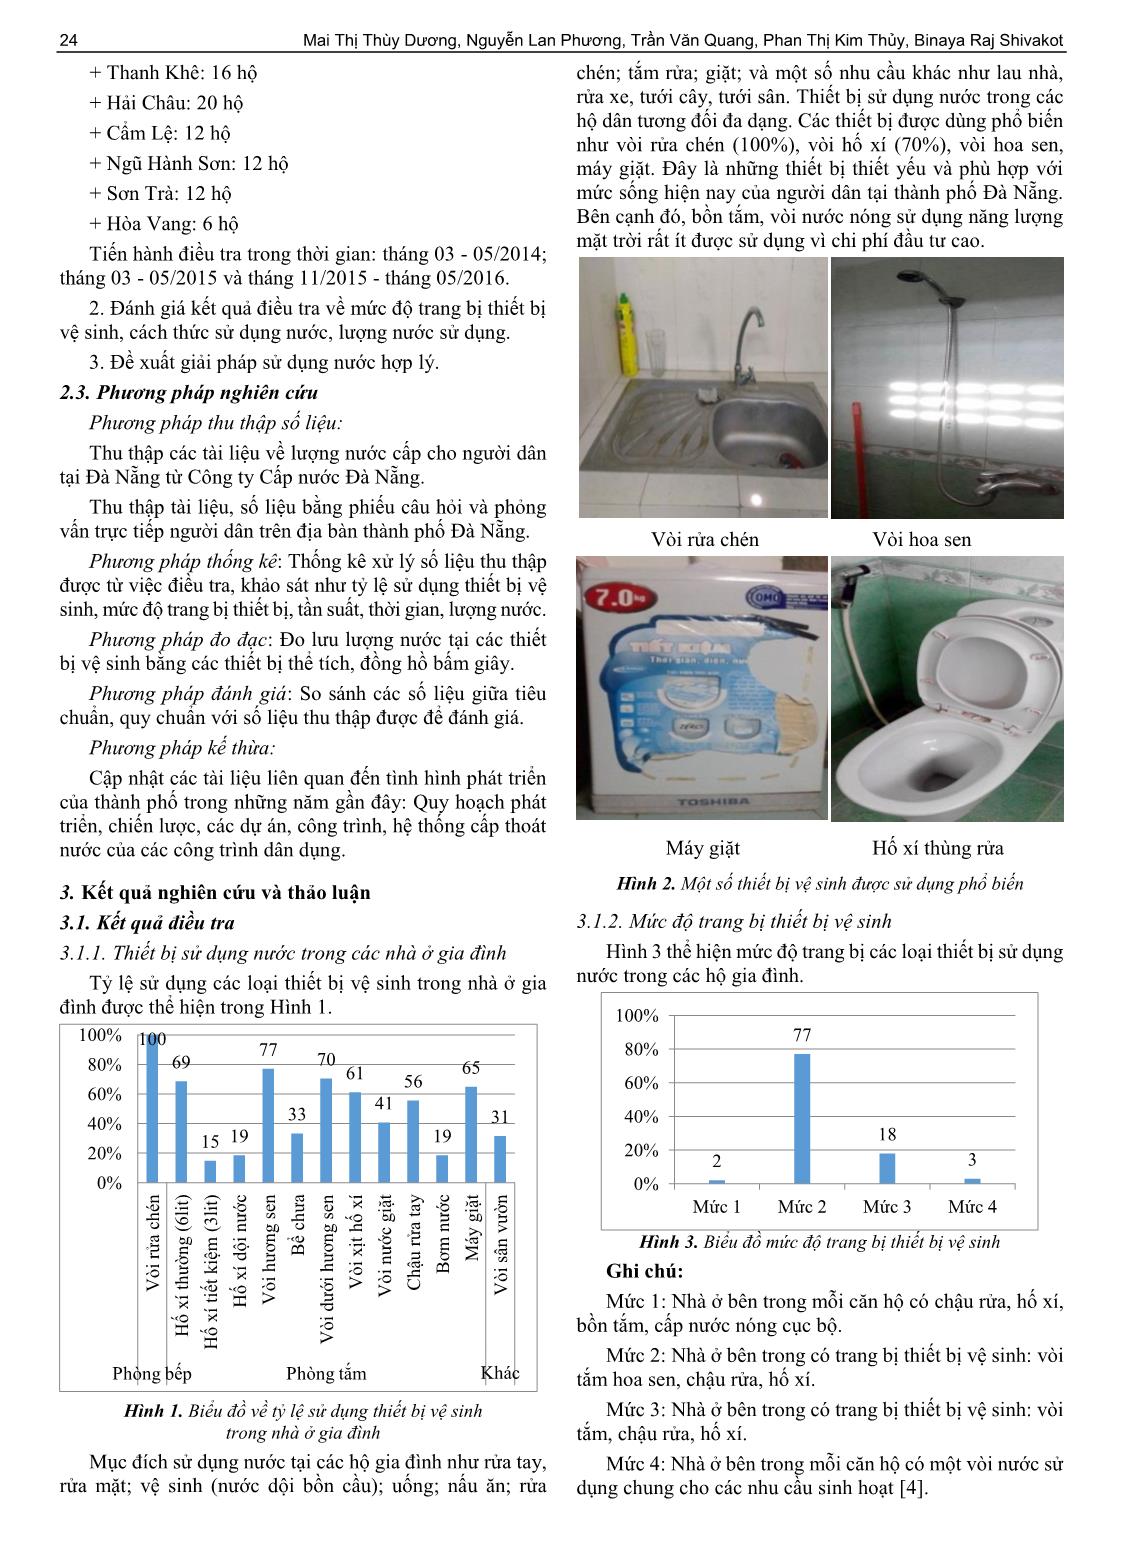 Giải pháp sử dụng nước hợp lý trong các hộ gia đình trên địa bàn thành phố Đà Nẵng trang 2